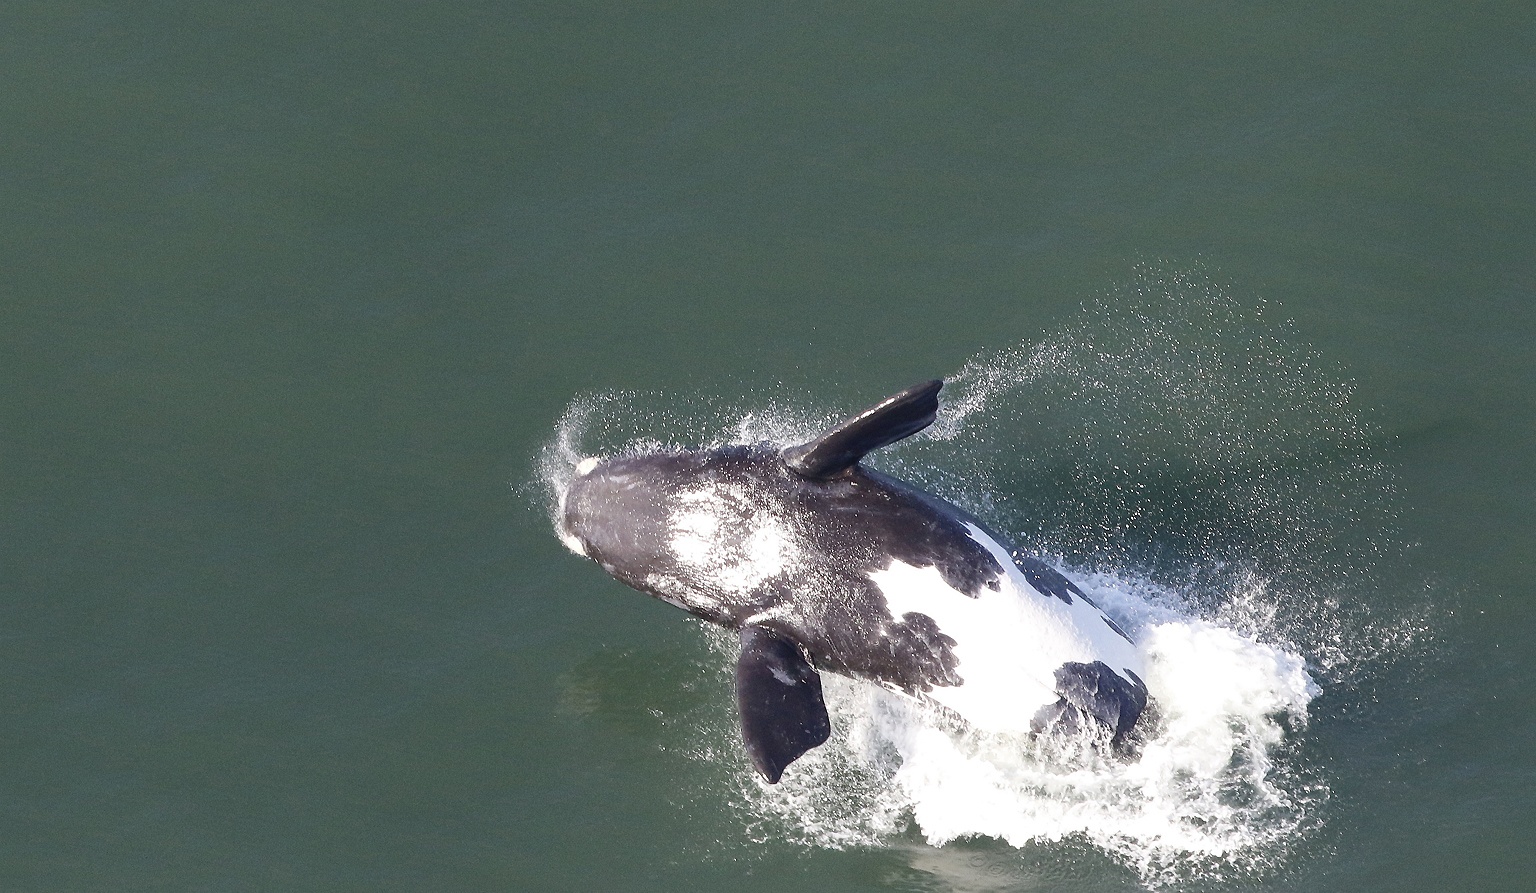 Baleine franche australe (breaching)